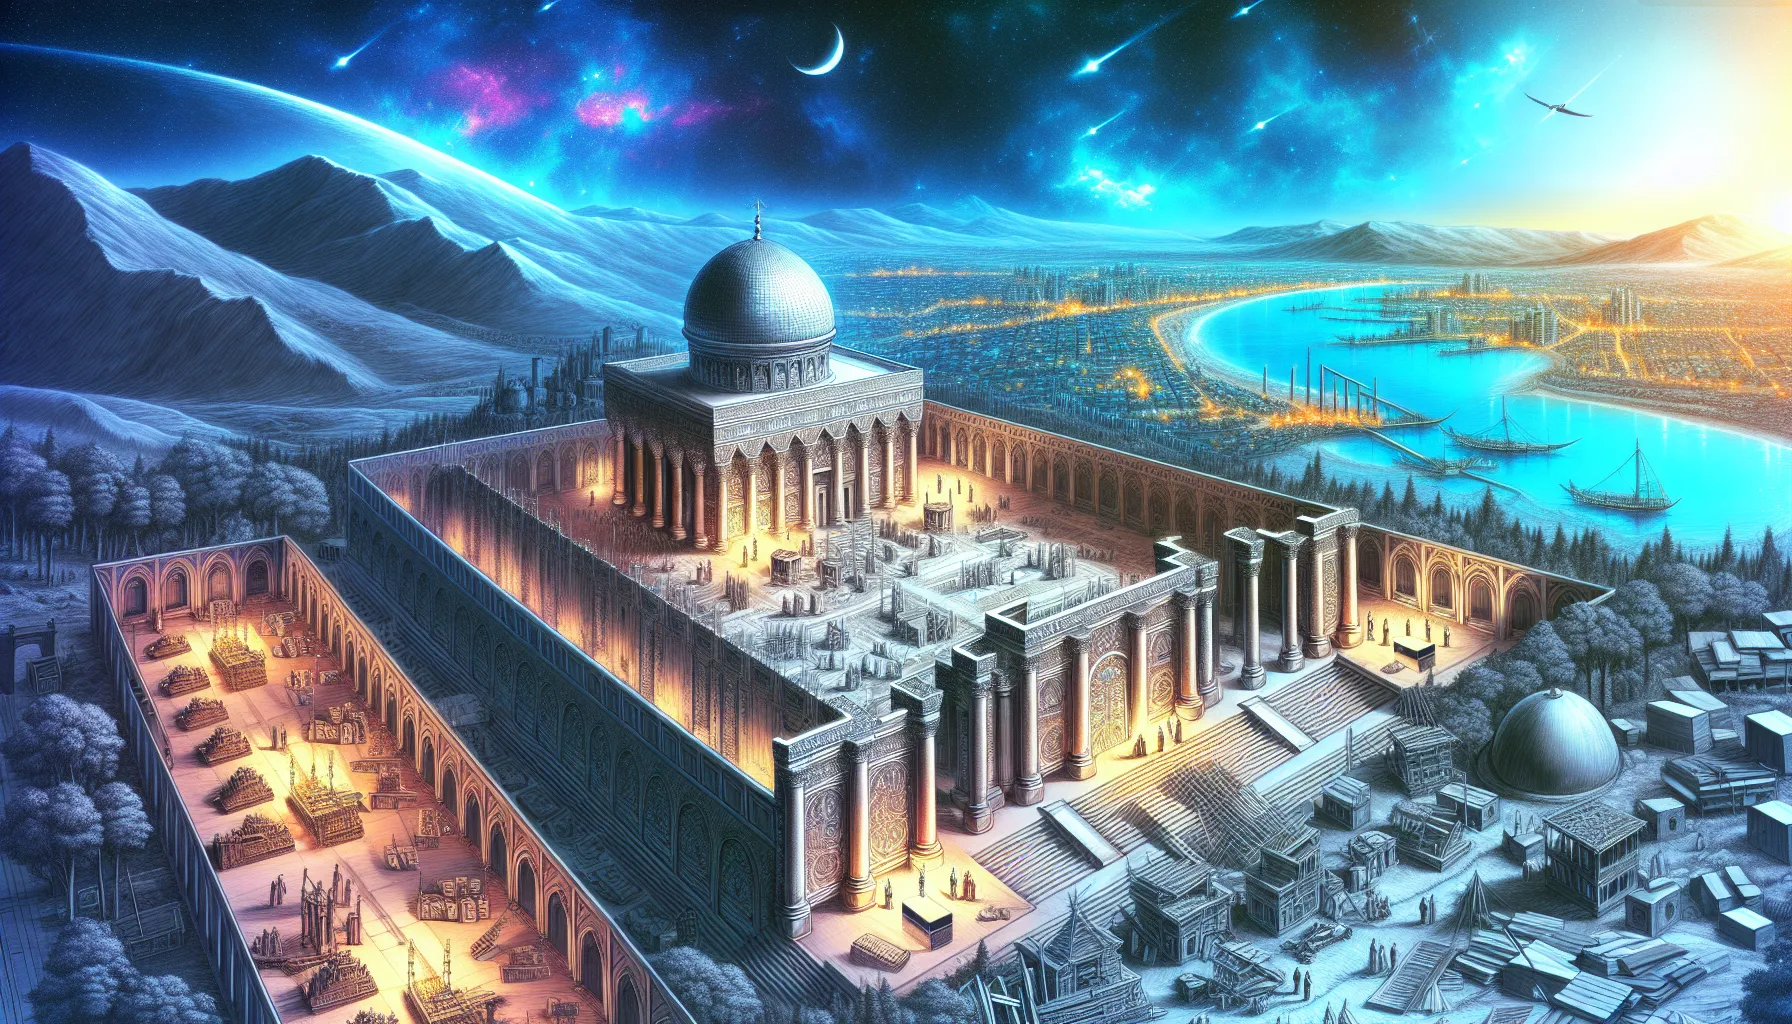 Representación artística del diseño del Tercer Templo de Jerusalén según la profecía bíblica del Apocalipsis.